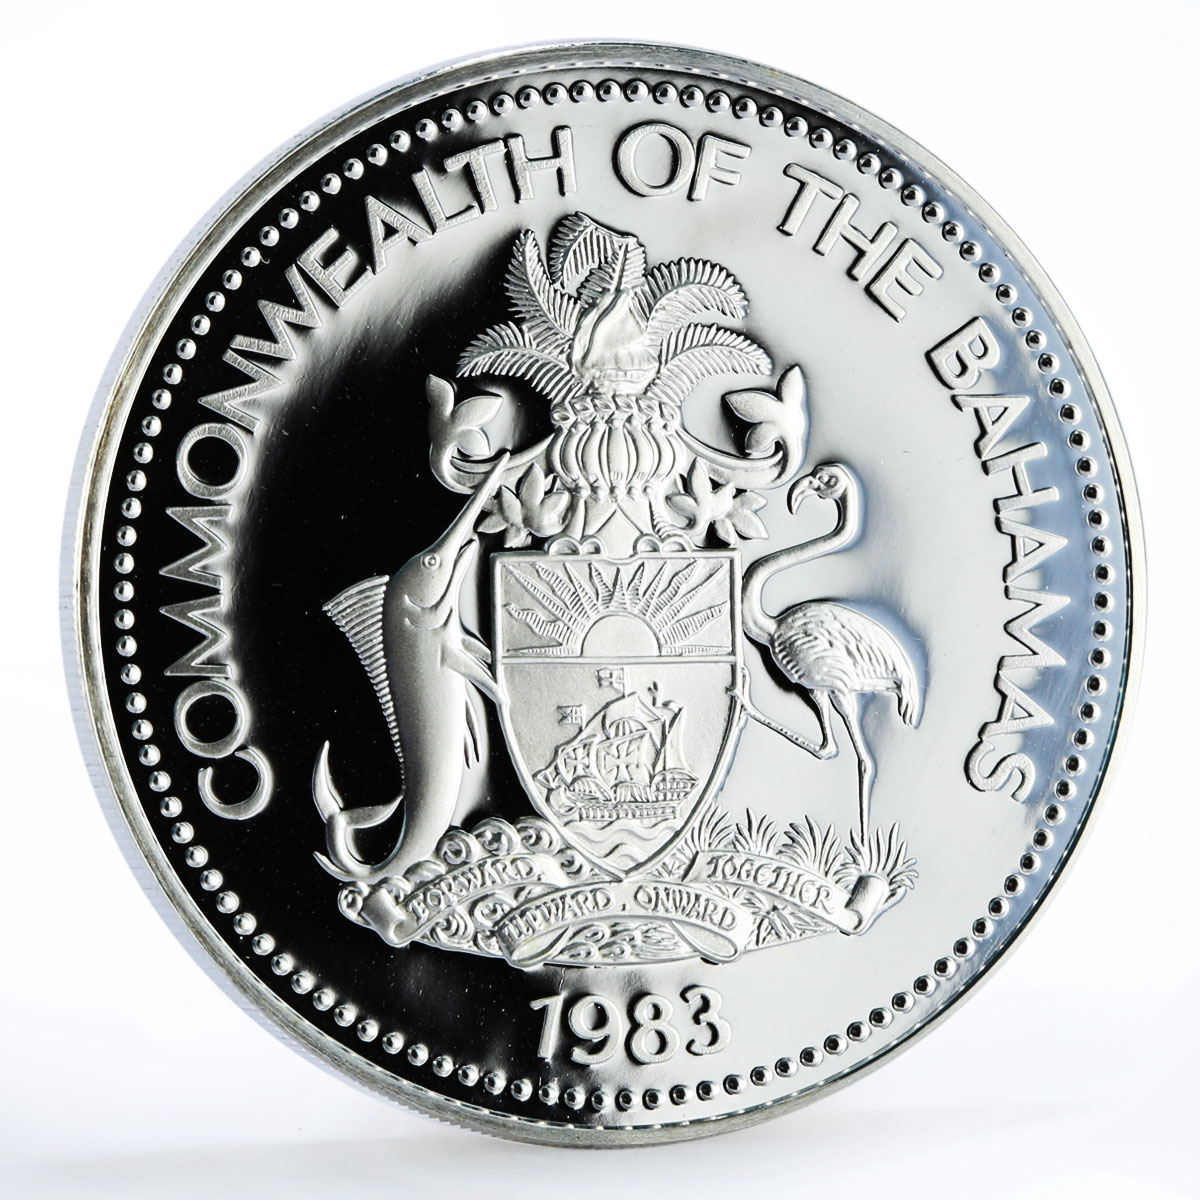 Bahamas 10 dollars Coronation Jubilee Royal Symbols silver coin 1983